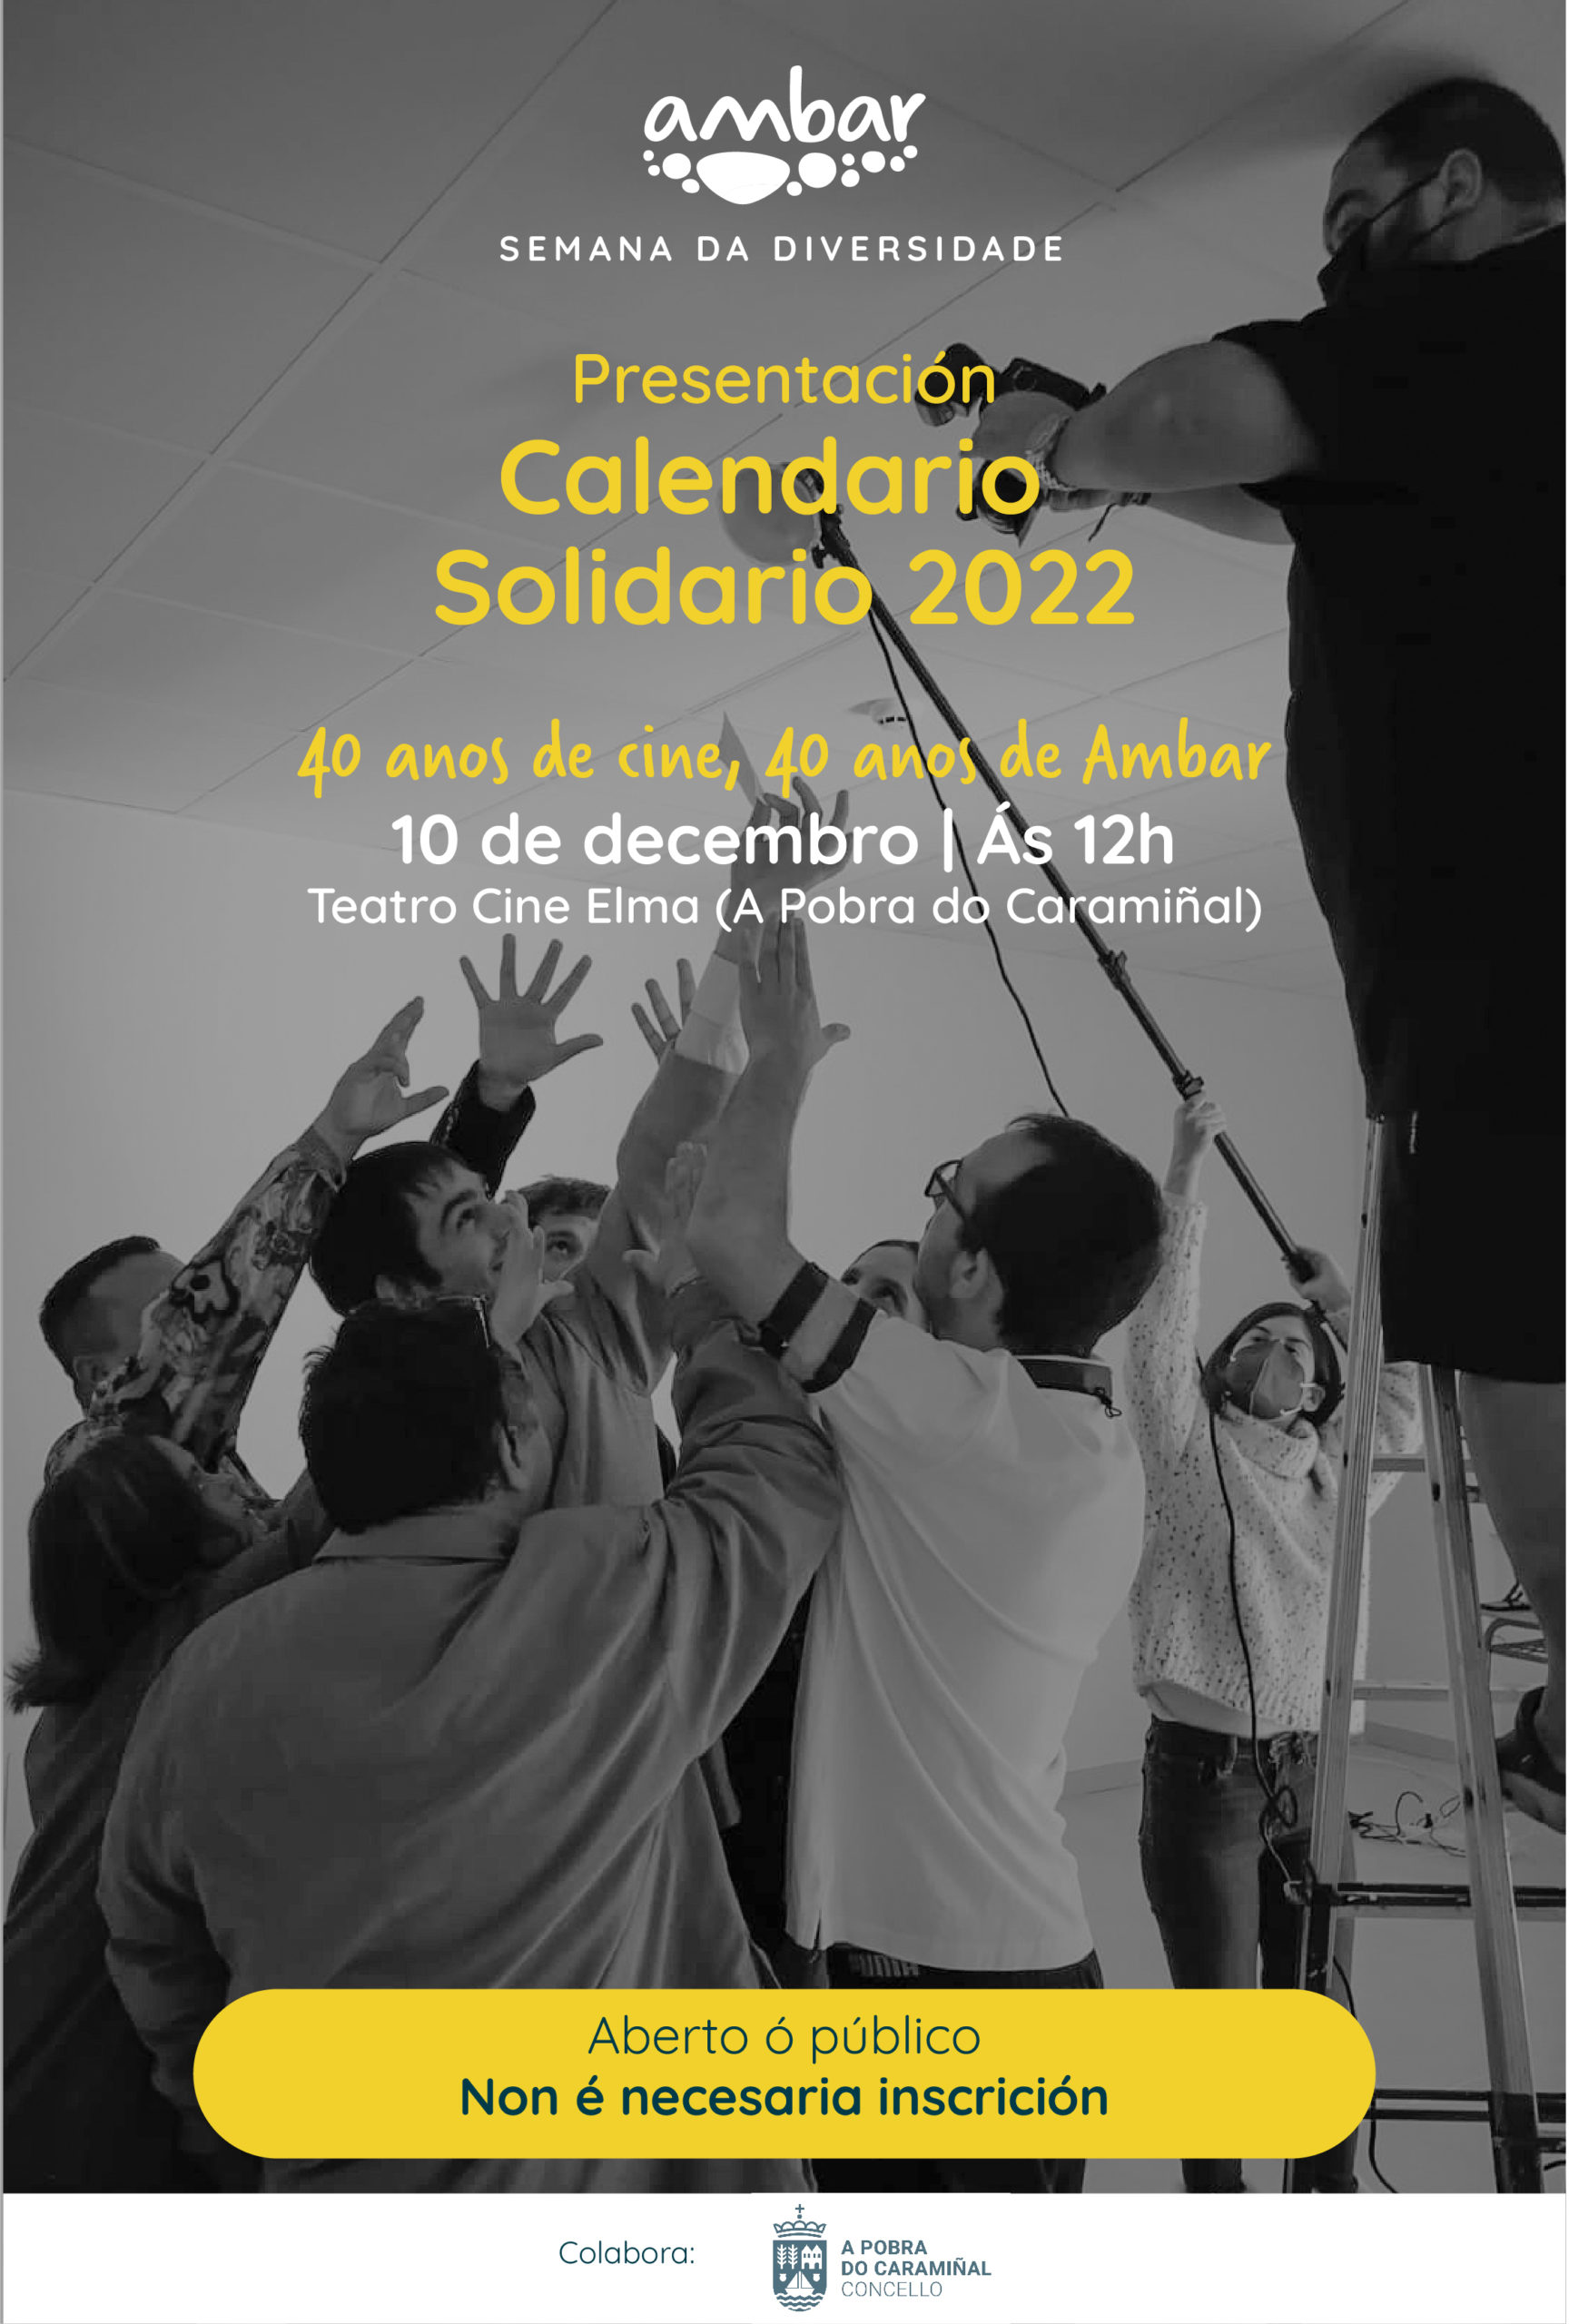 Semana da Diversidade Presentación Calendario Solidario 2022